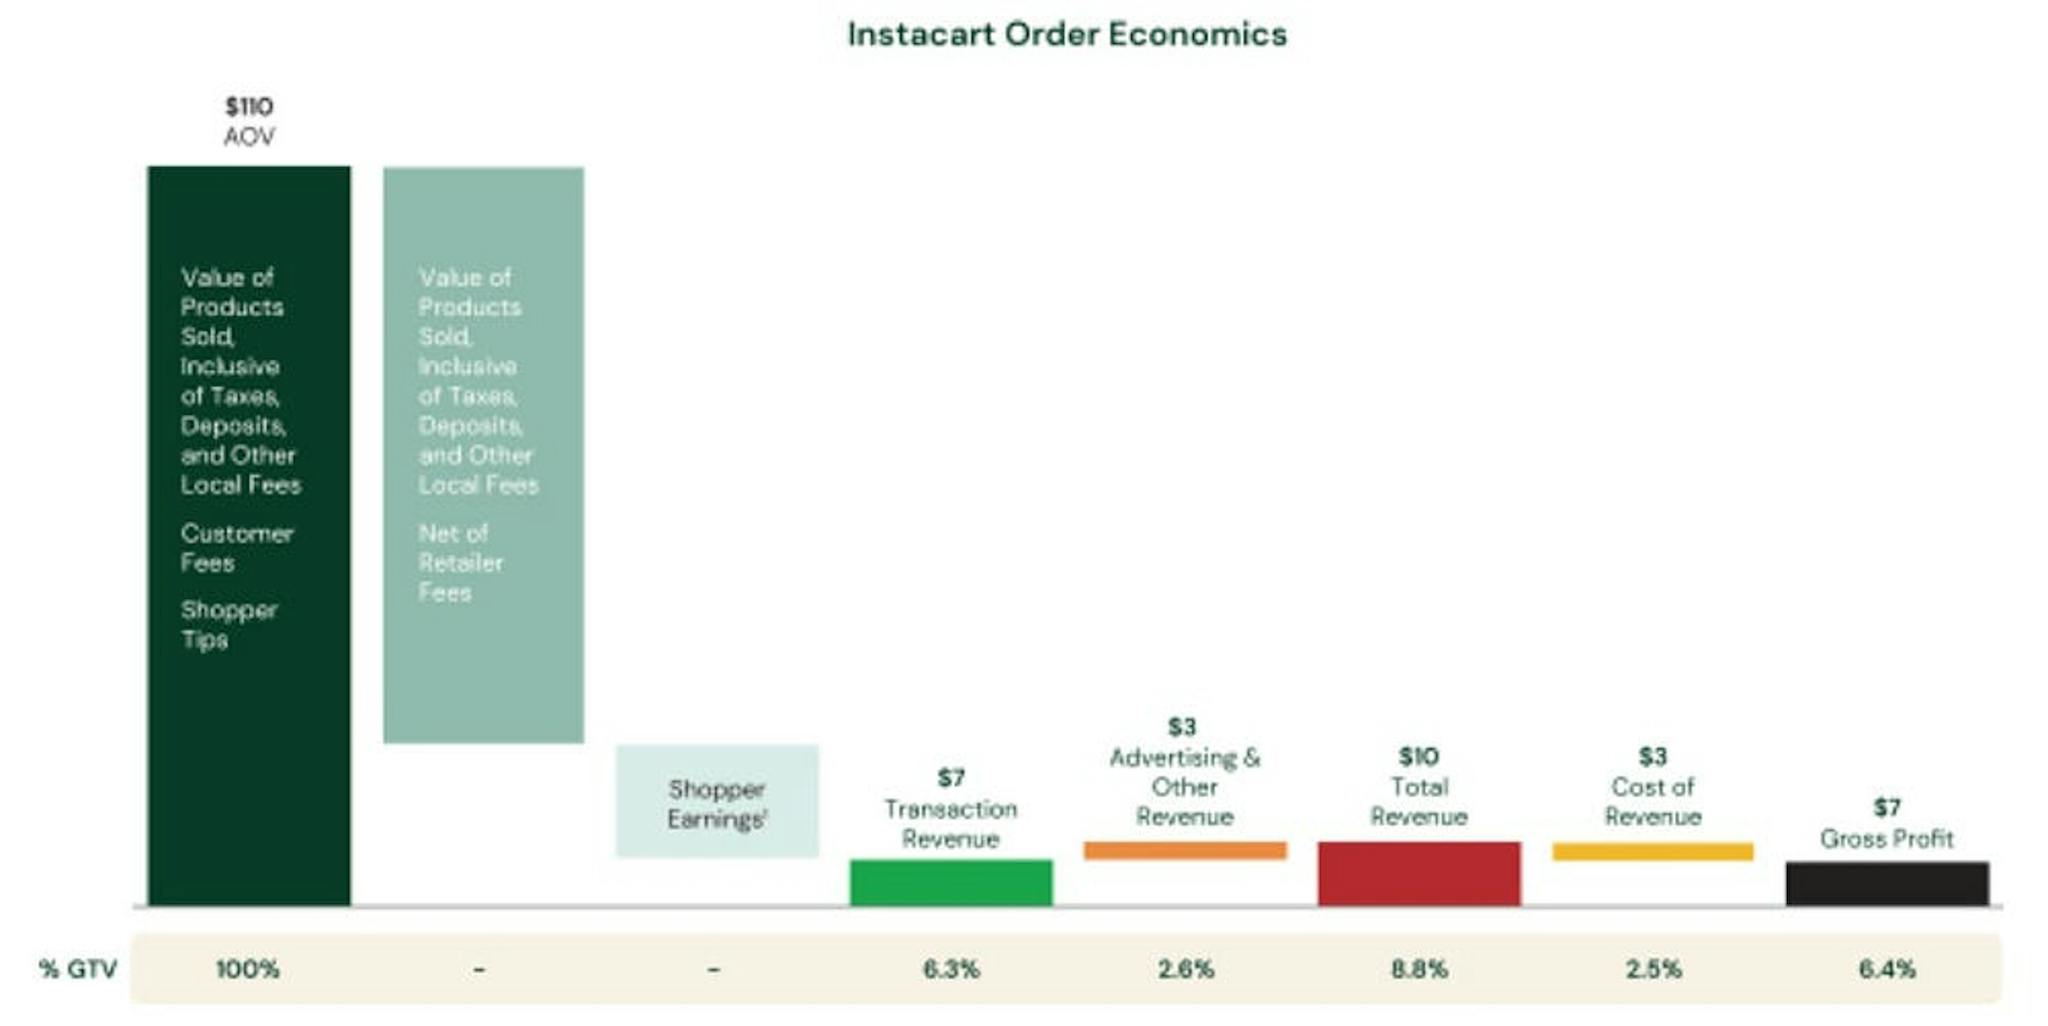 Instacart sipariş ekonomisi; Kaynak: Instacart S-1